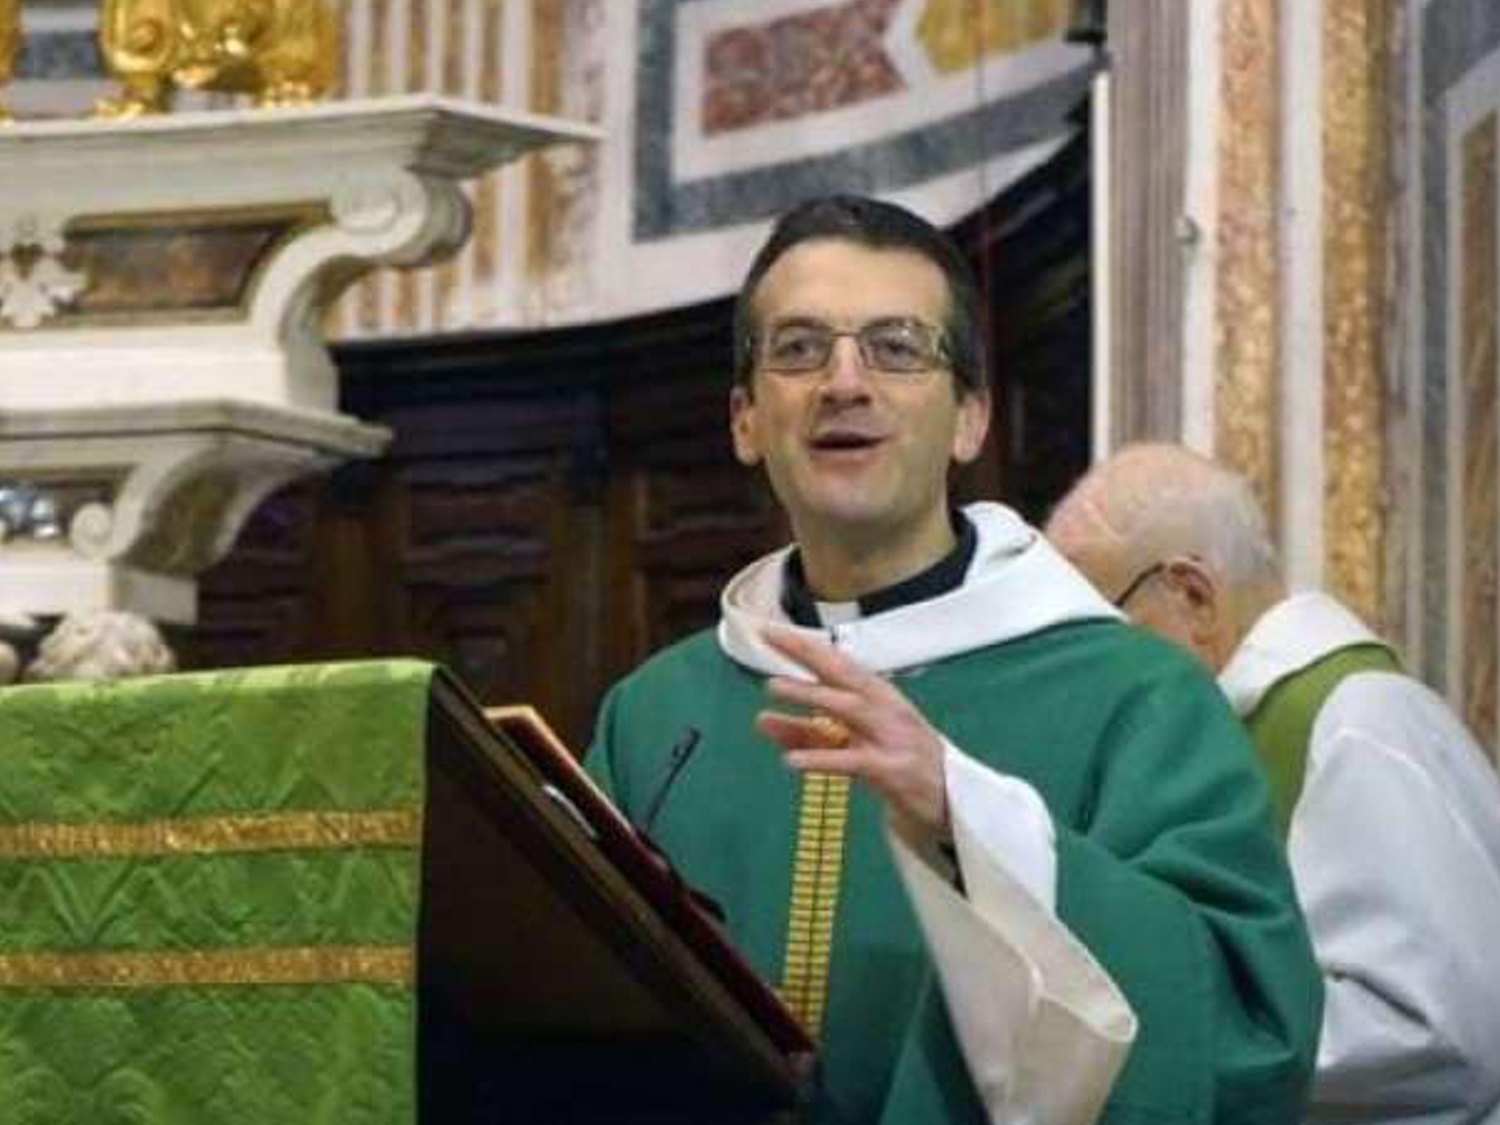 Un párroco italiano no bendice el domingo de ramos porque el Vaticano prohíbe bendecir parejas homosexuales